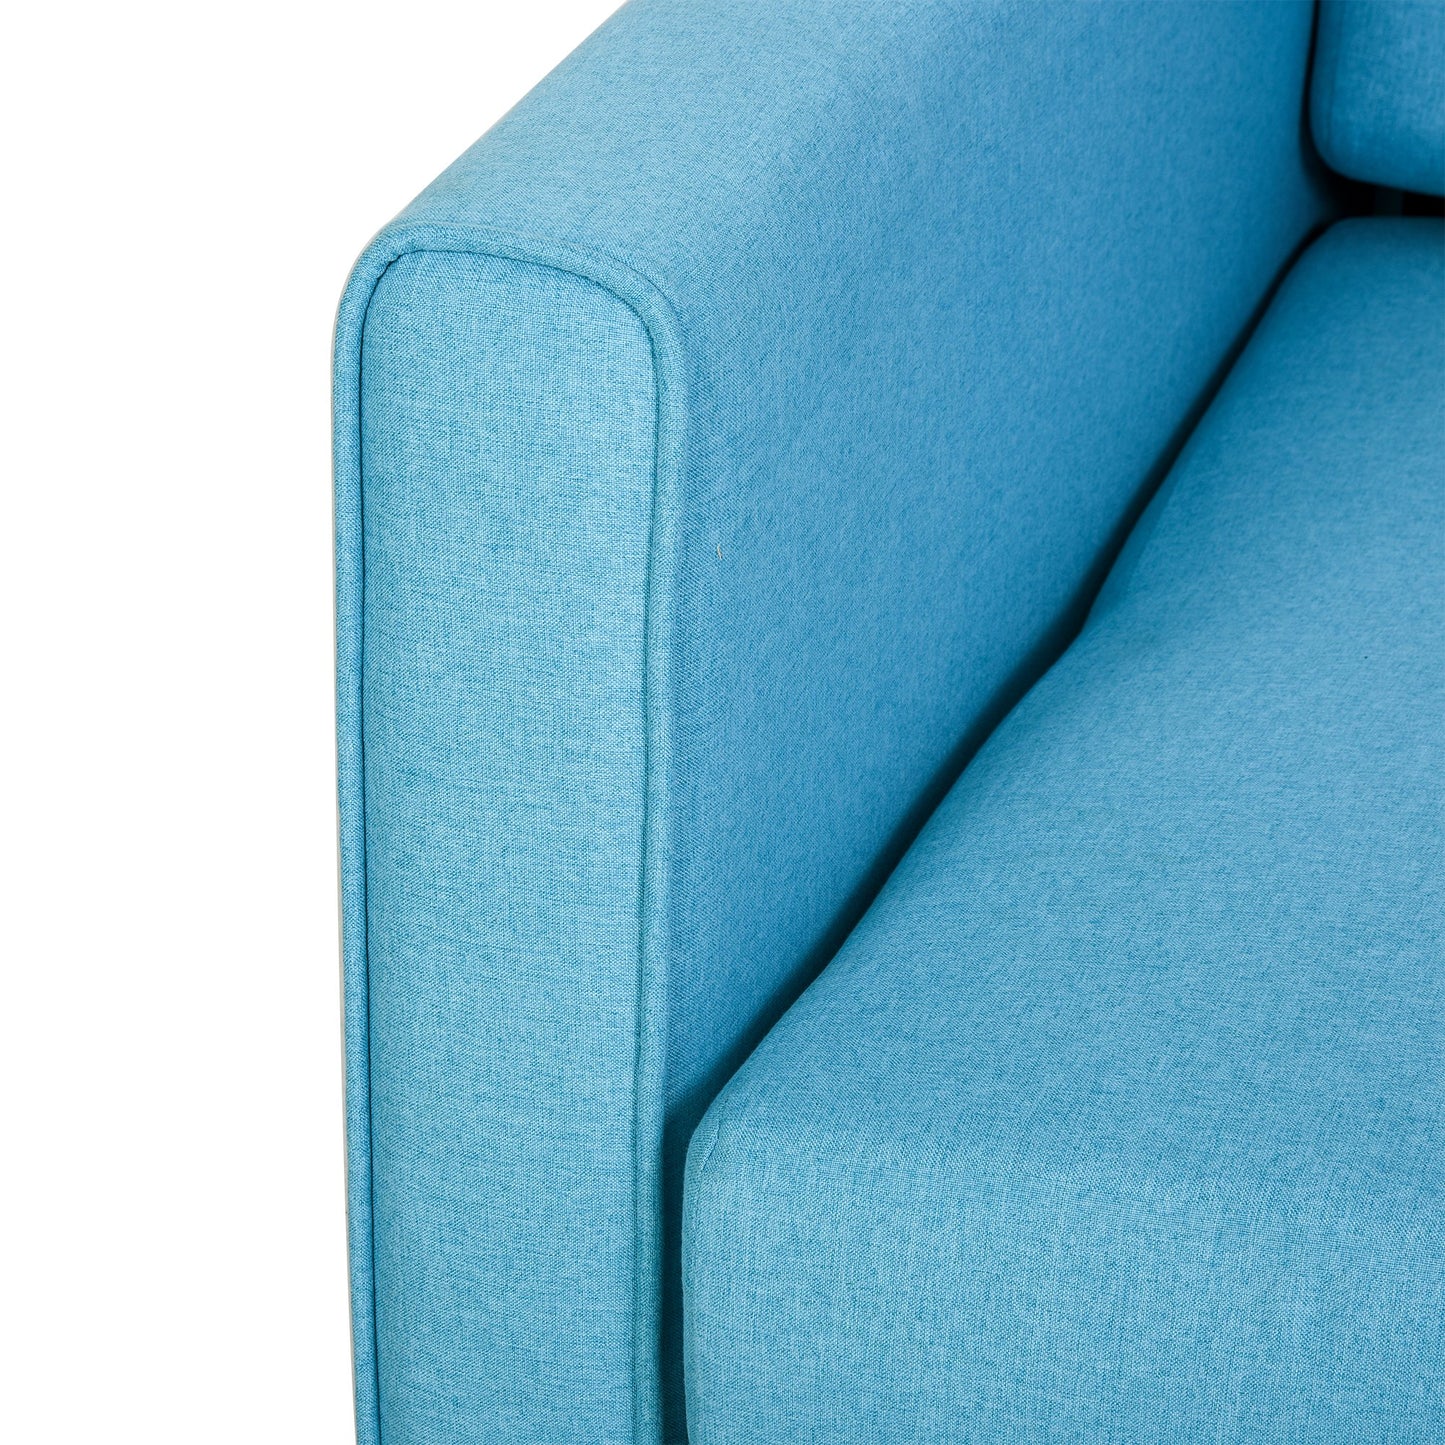 HOMCOM Polycotton 2-Seater Sofa Bed w/ Pillows Blue